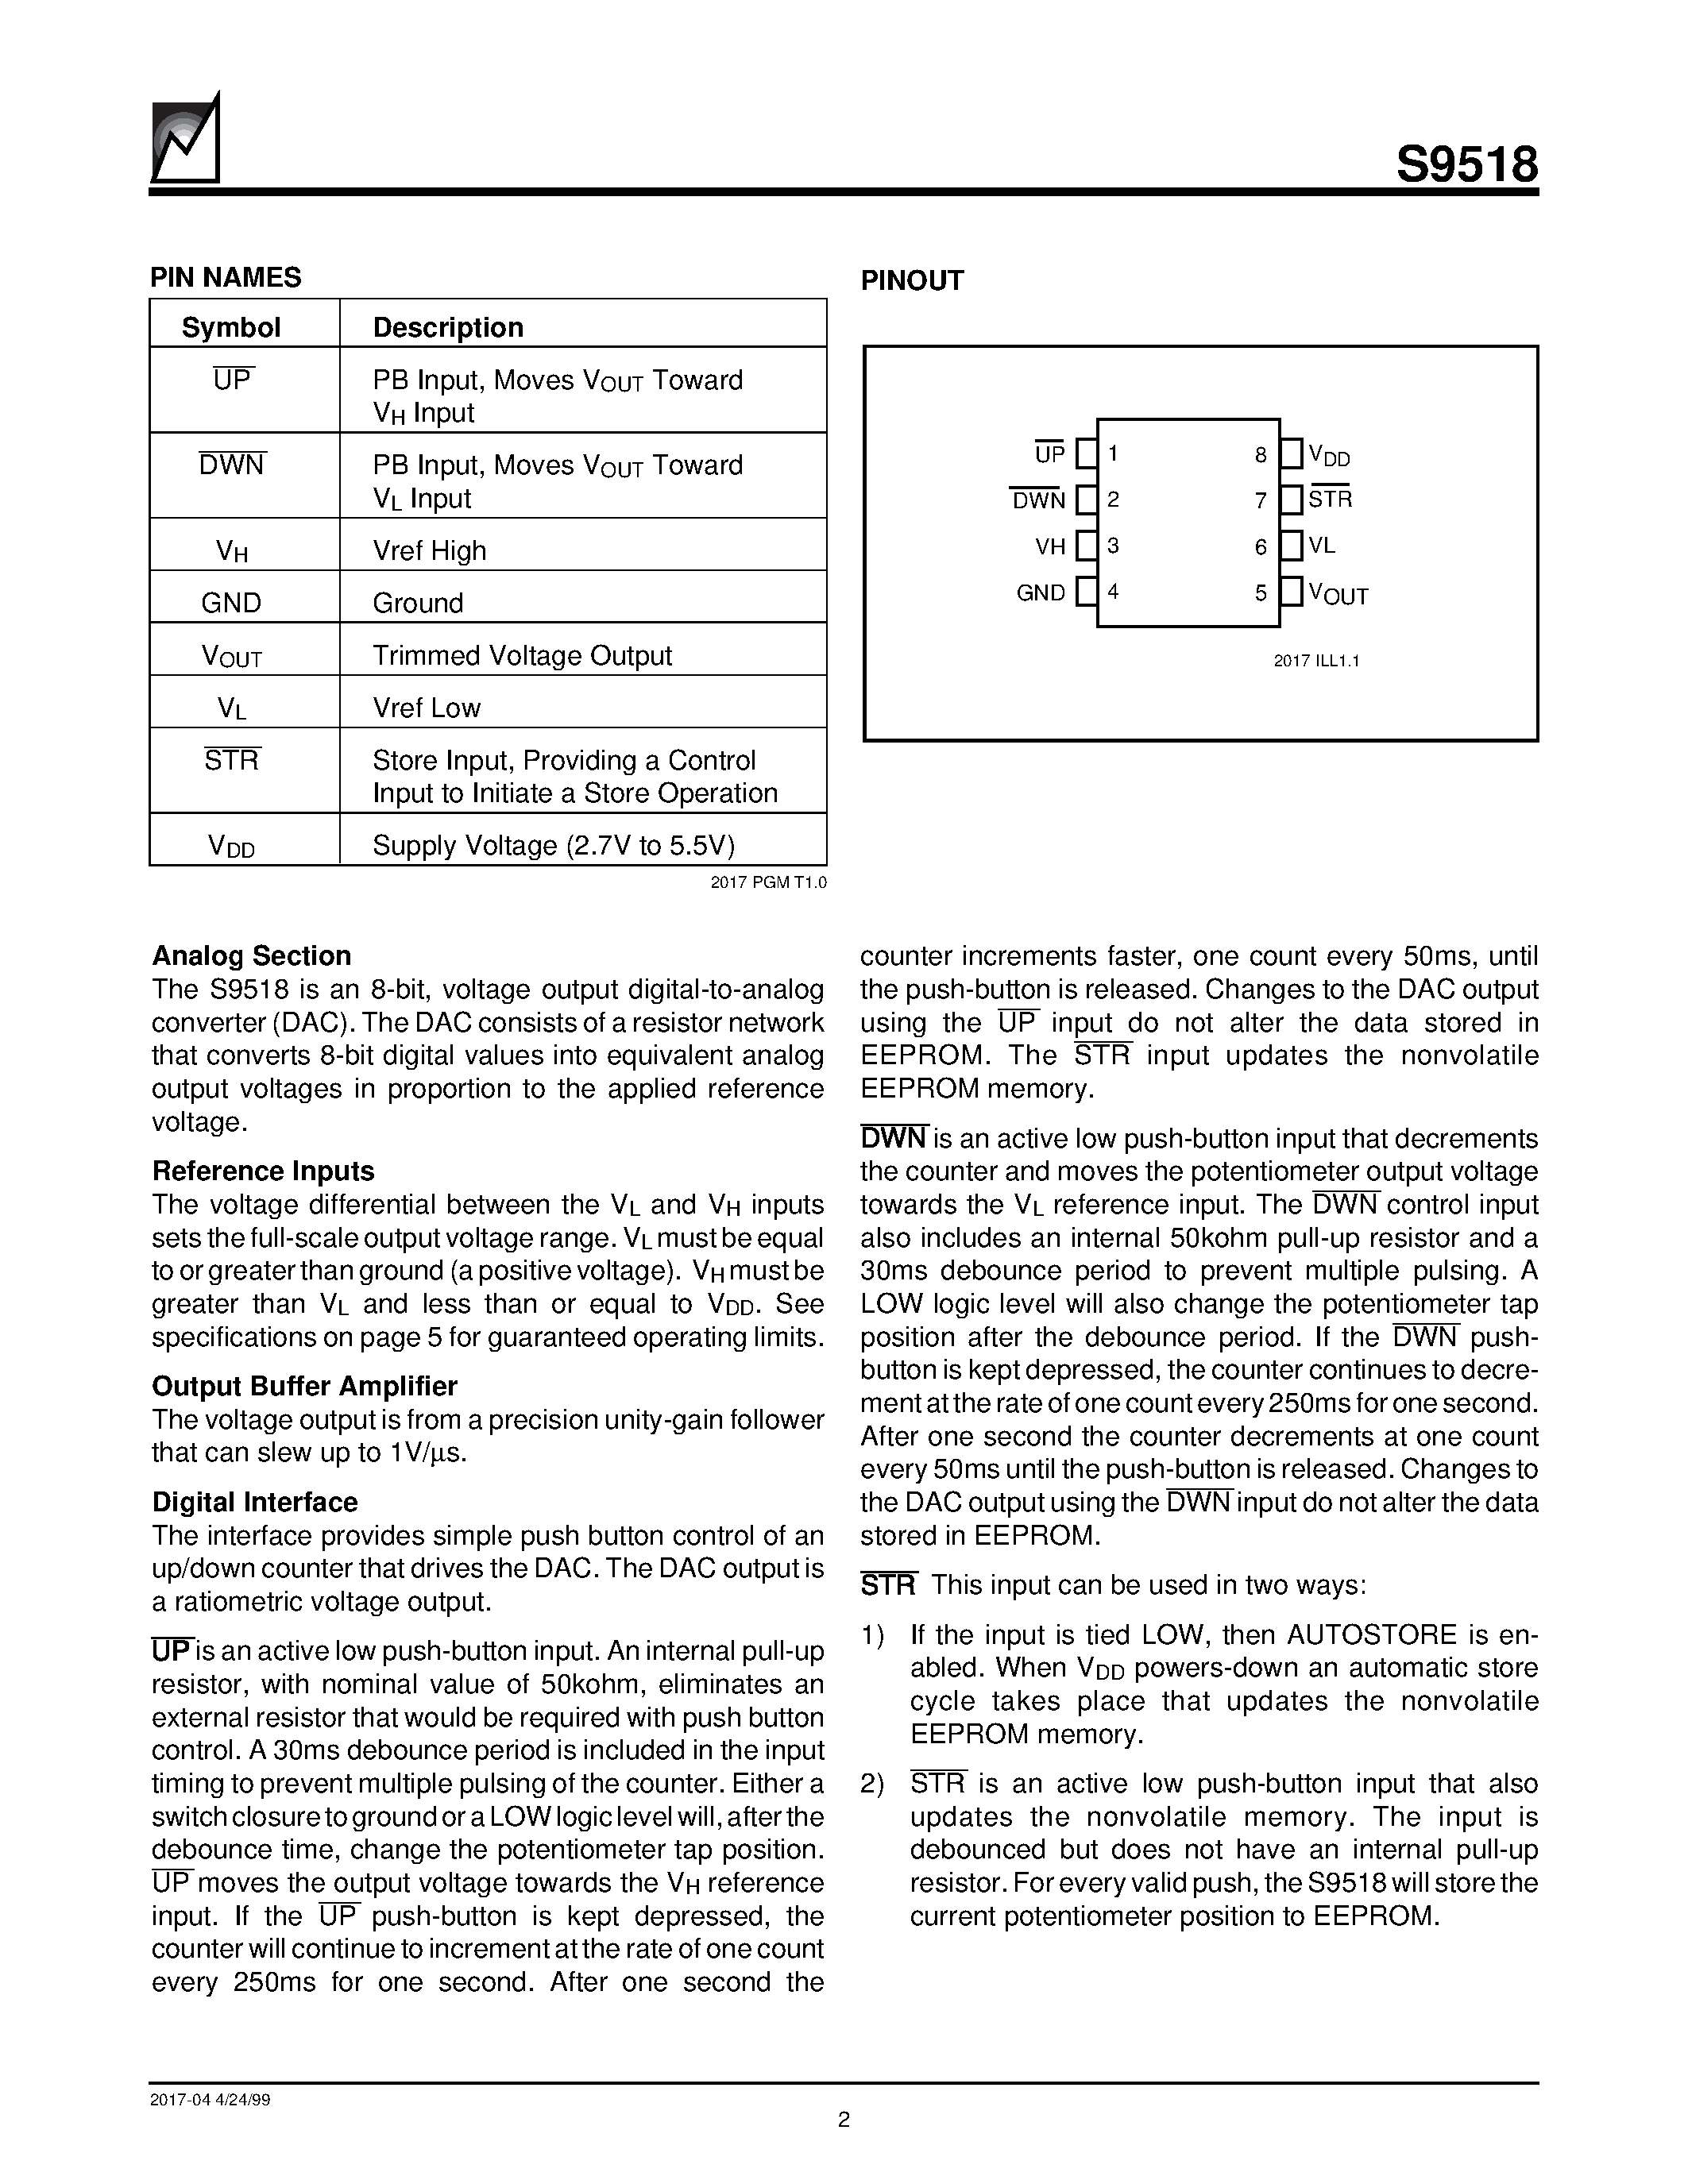 Даташит S9518 - Nonvolatile DACPOT Electronic Potentiometer With Debounced Push Button Interface страница 2